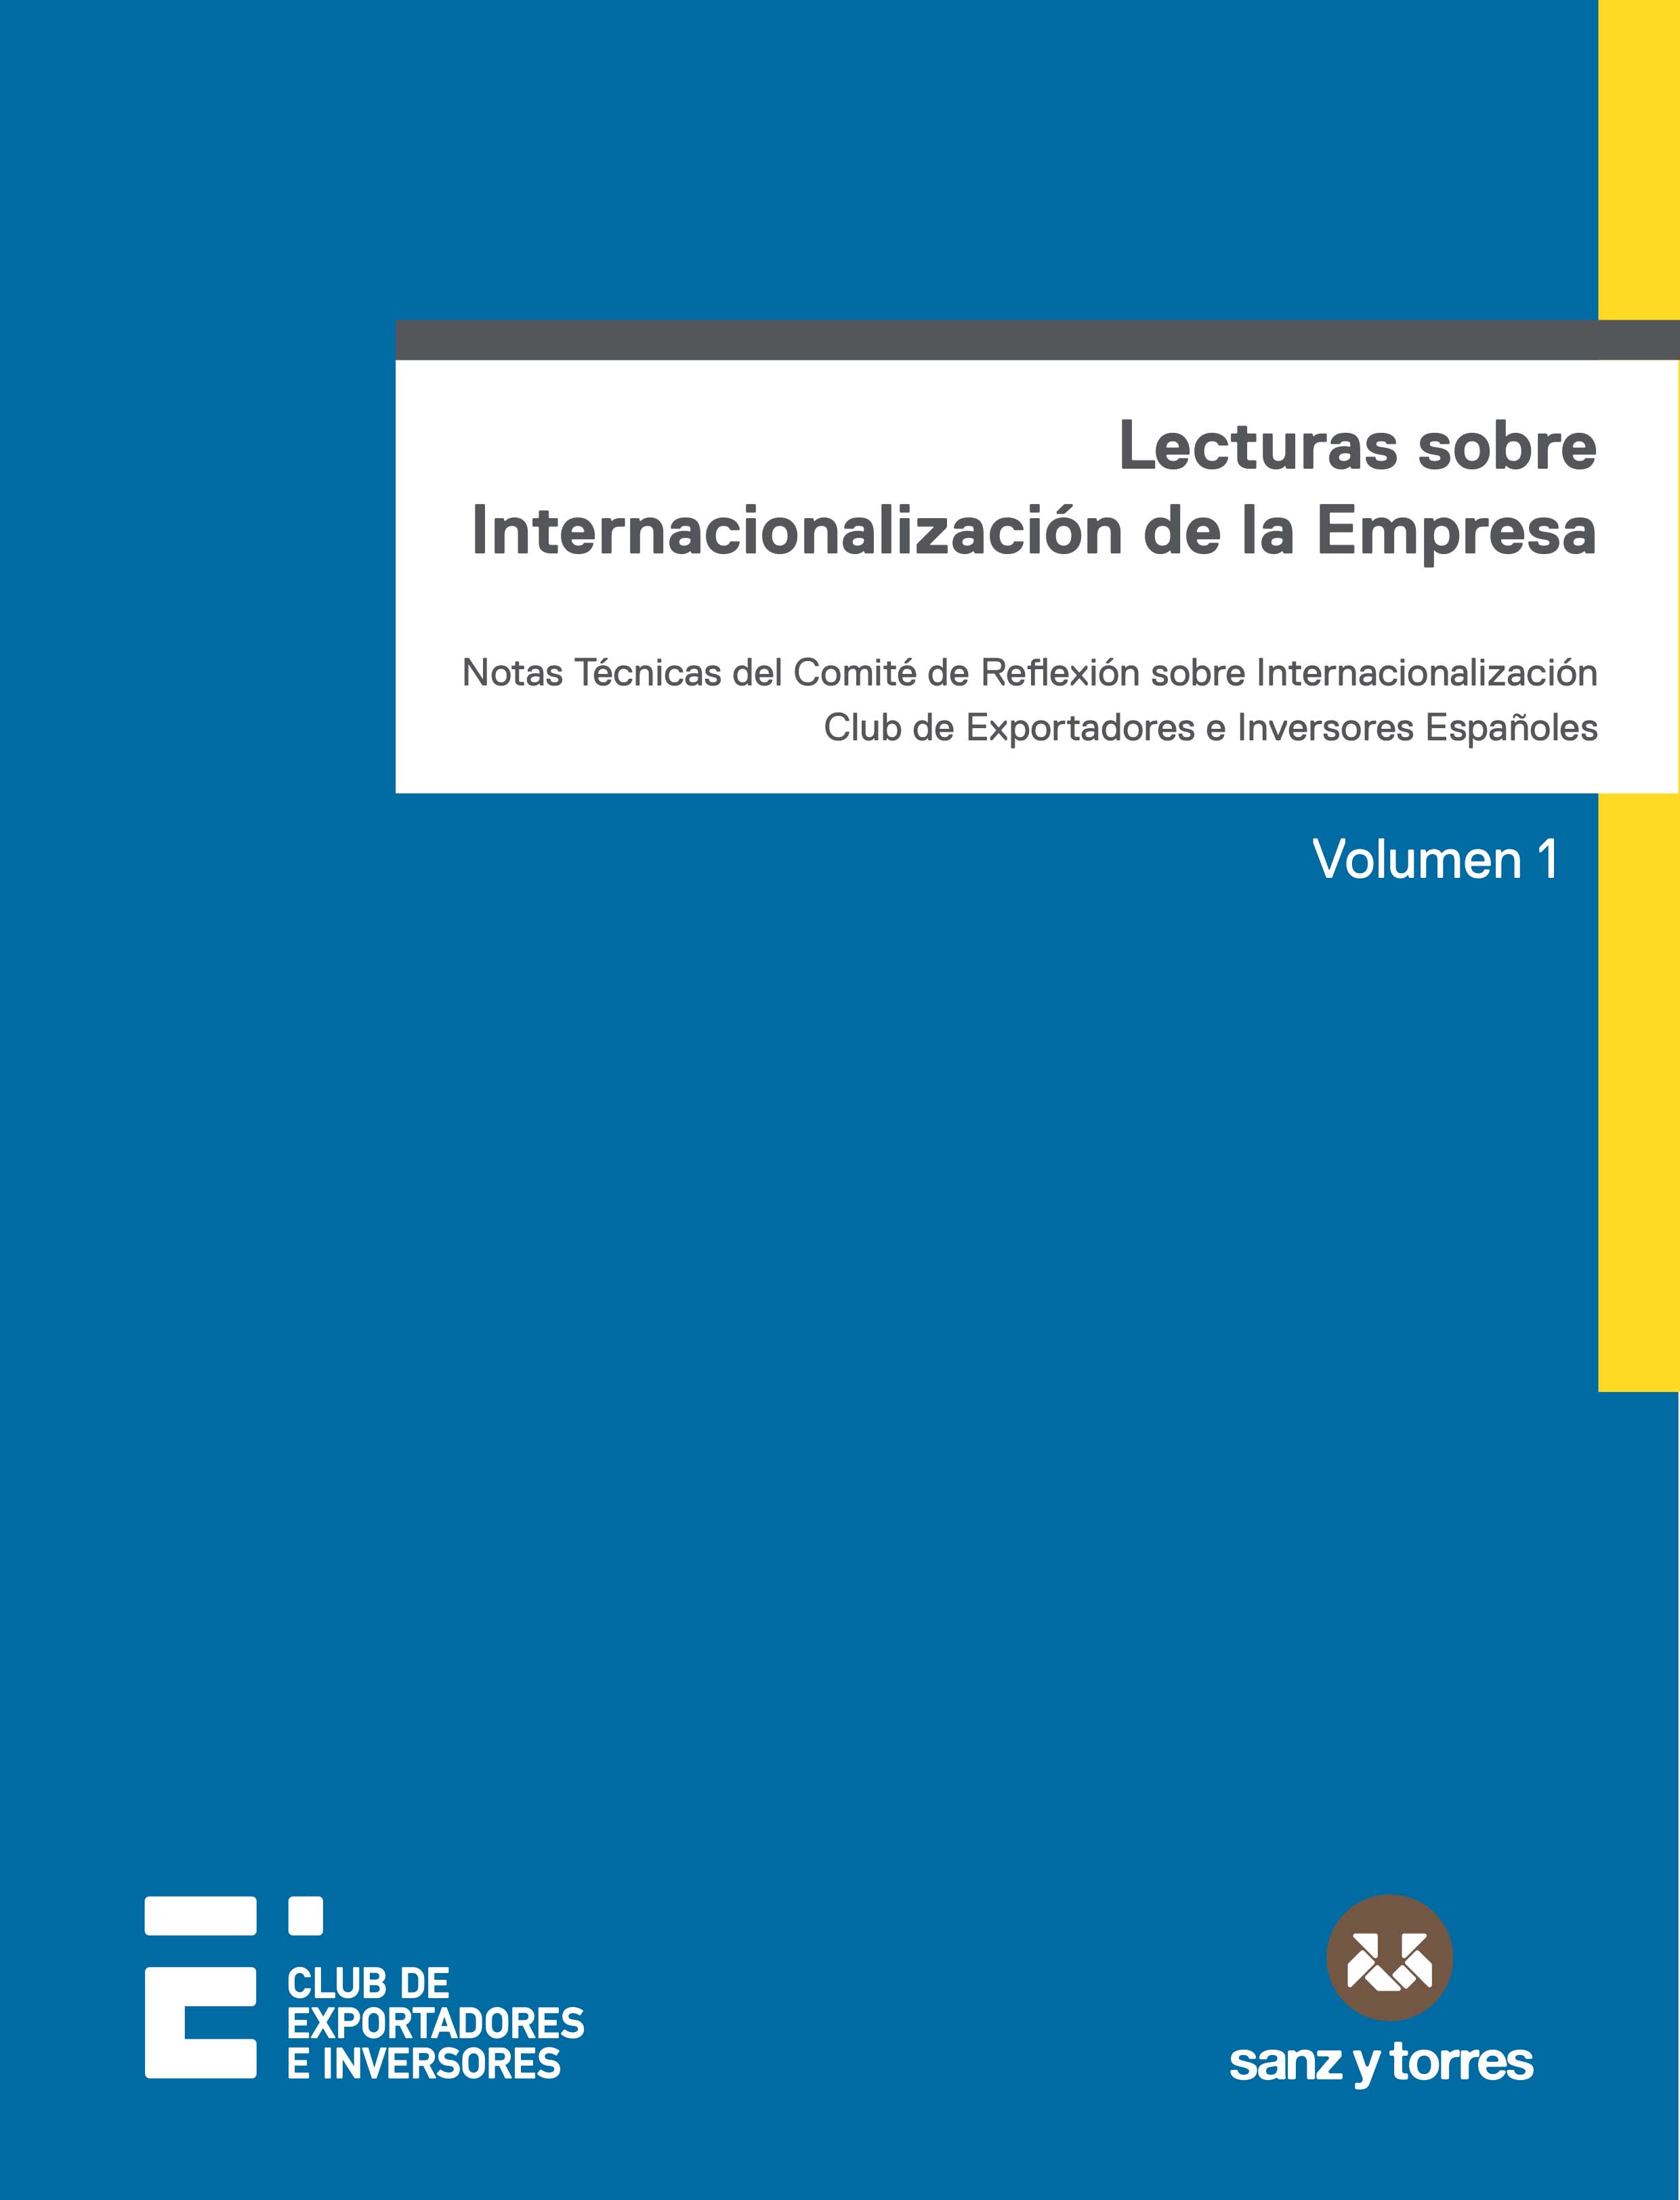 Lecturas sobre internacionalización de la empresa